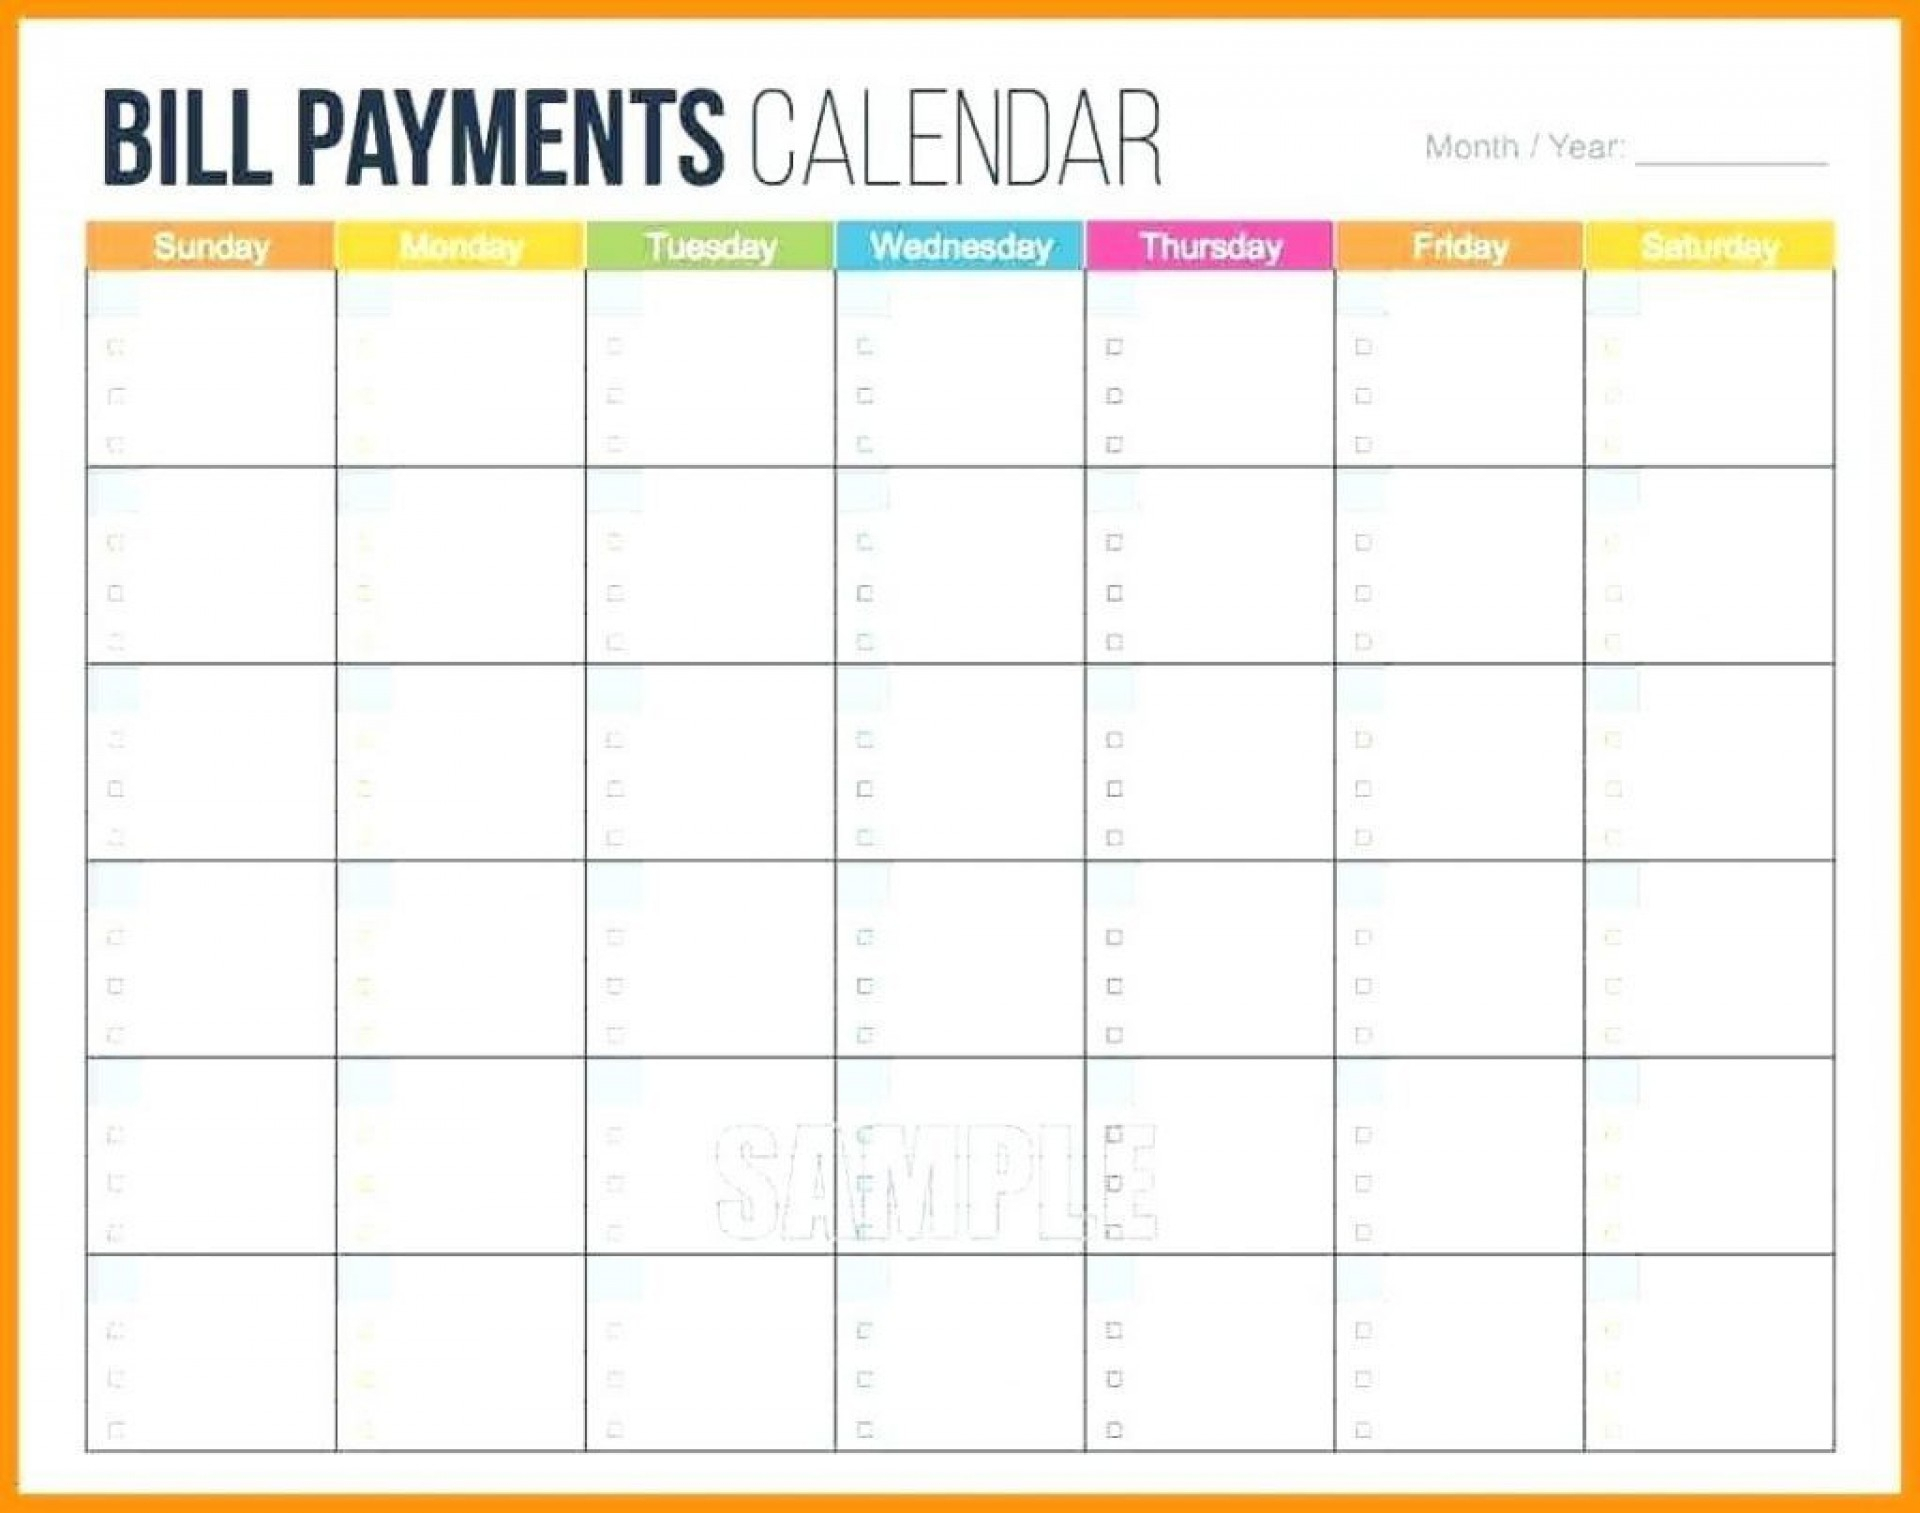 026 Bill Pay Calendar Template Weekly Schedule Sunthrusat